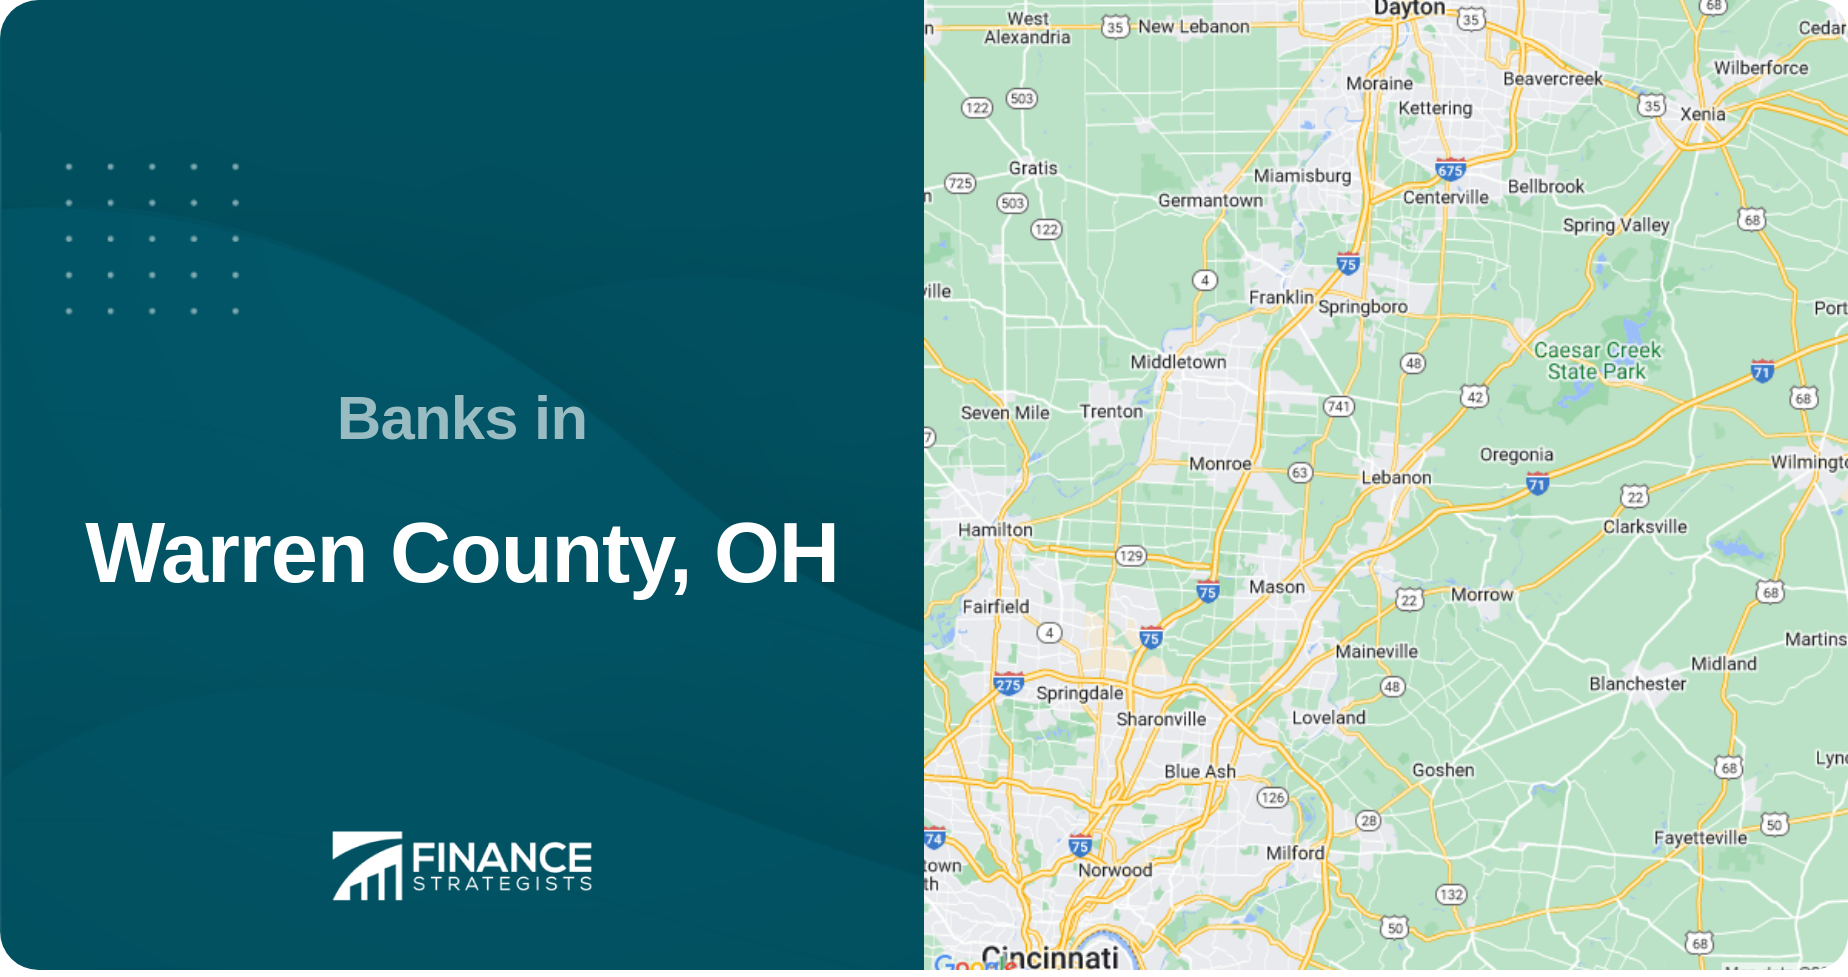 Banks in Warren County, OH